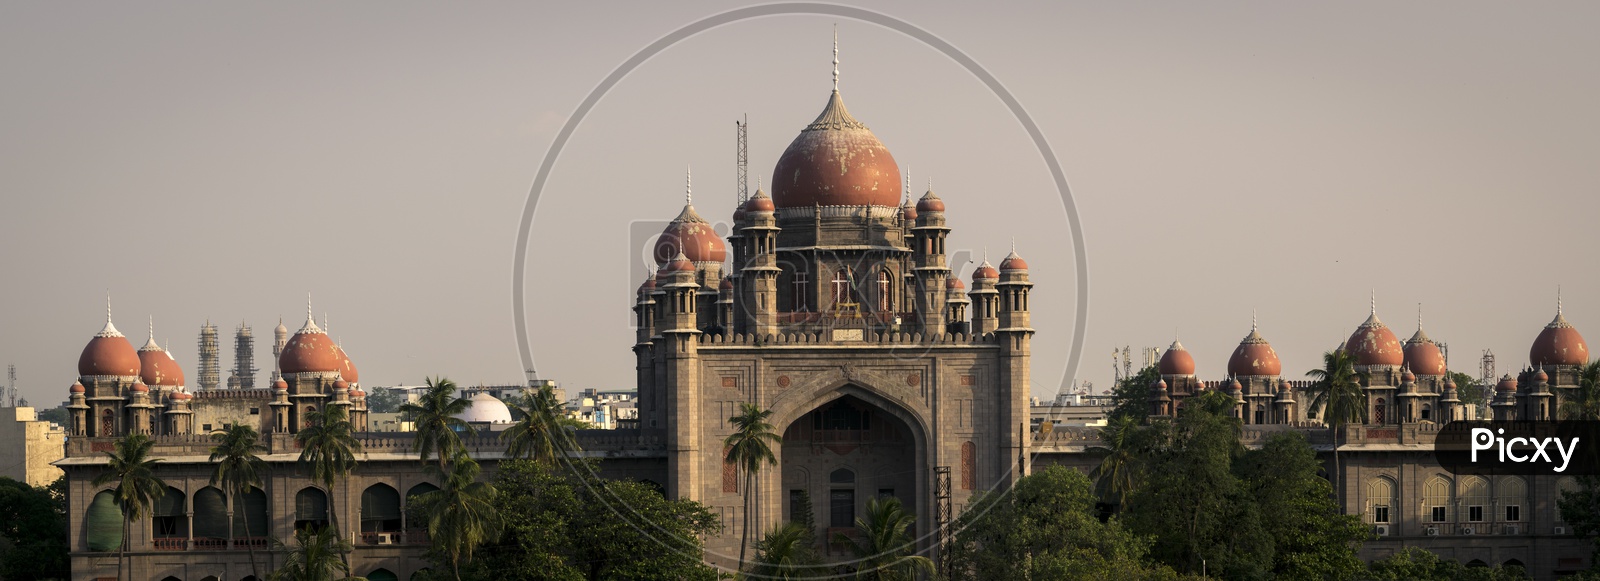 Telangana High Court, Hyderabad